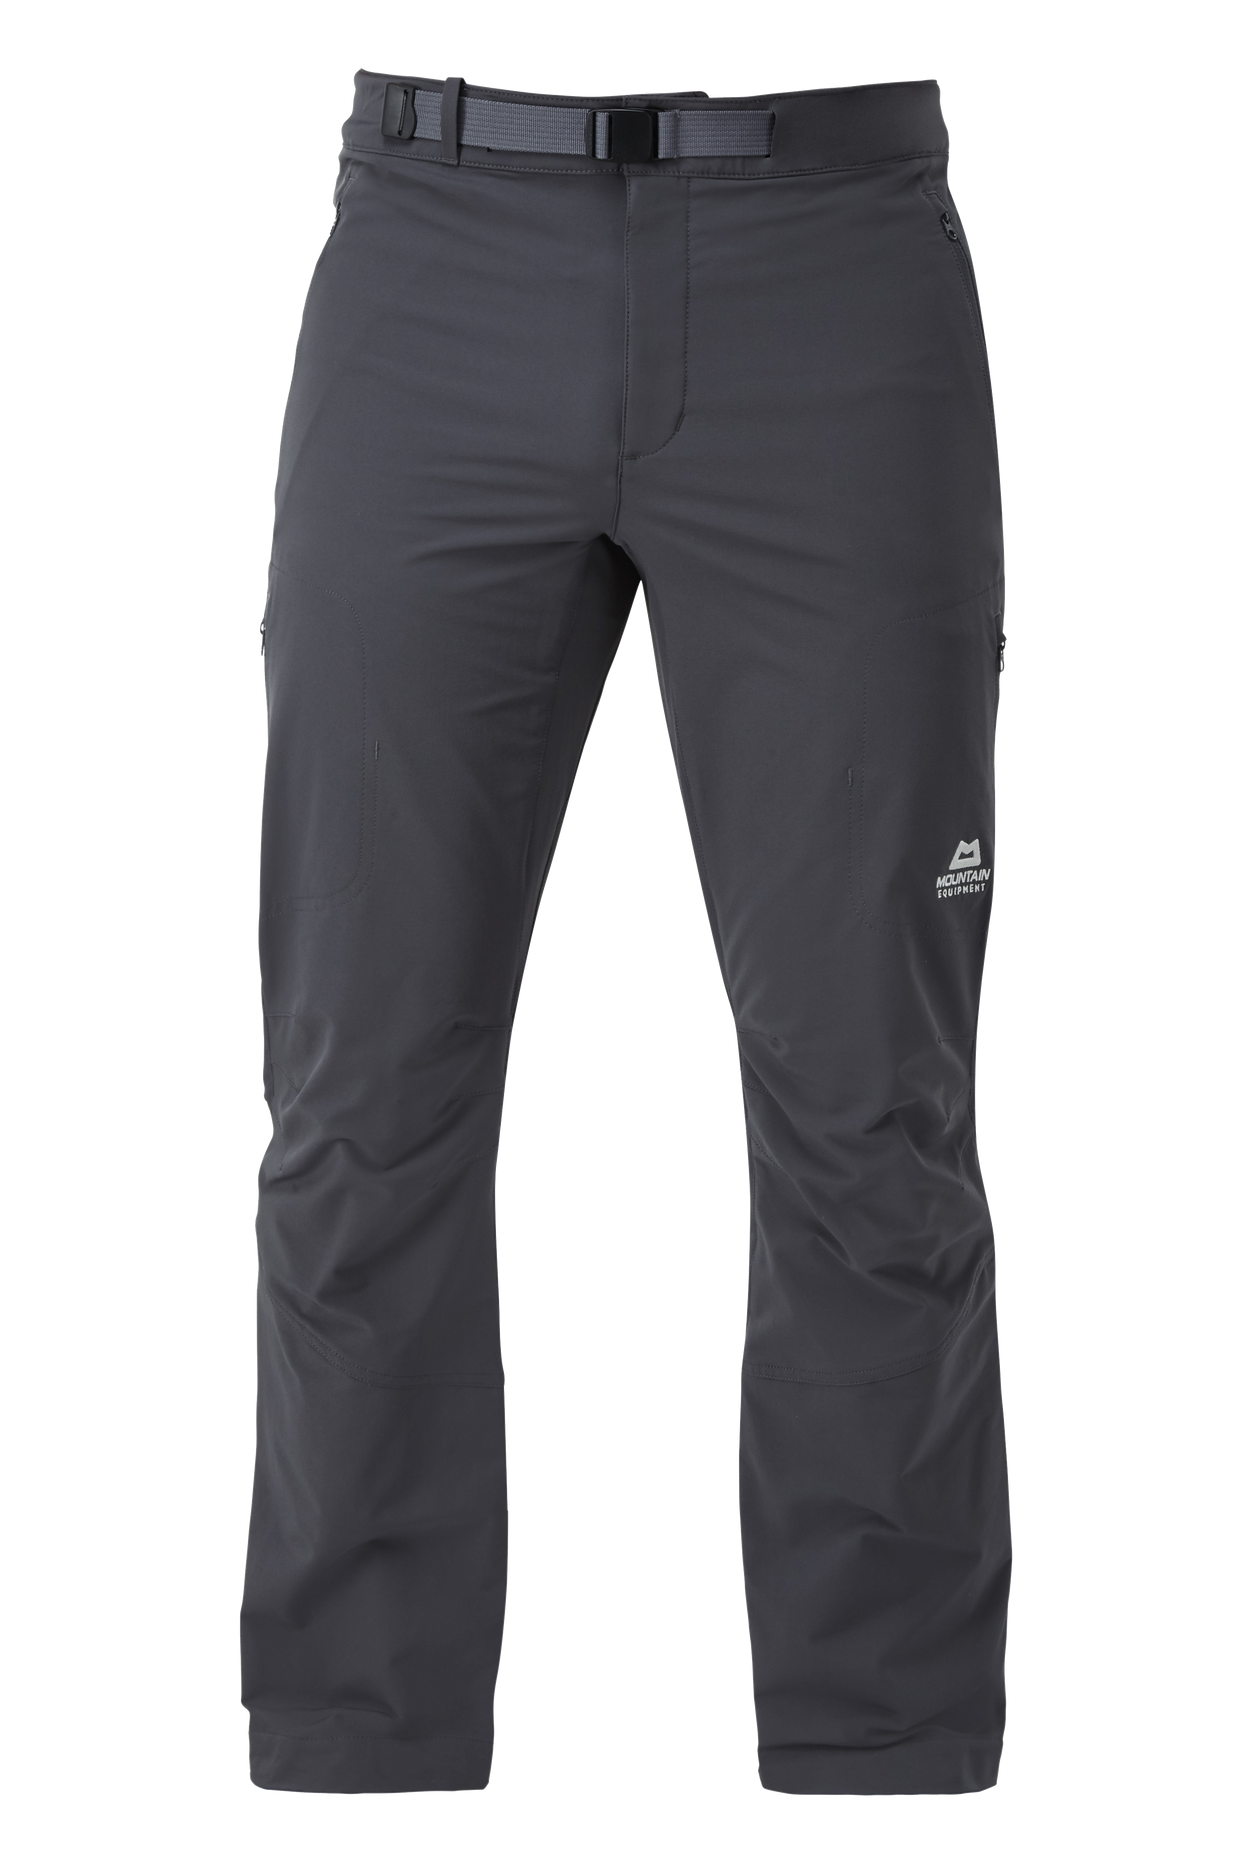 Mountain Equipment Ibex Mountain Pant Men'S - prodloužené nohavice Barva: Anvil Grey, Velikost: 32/M